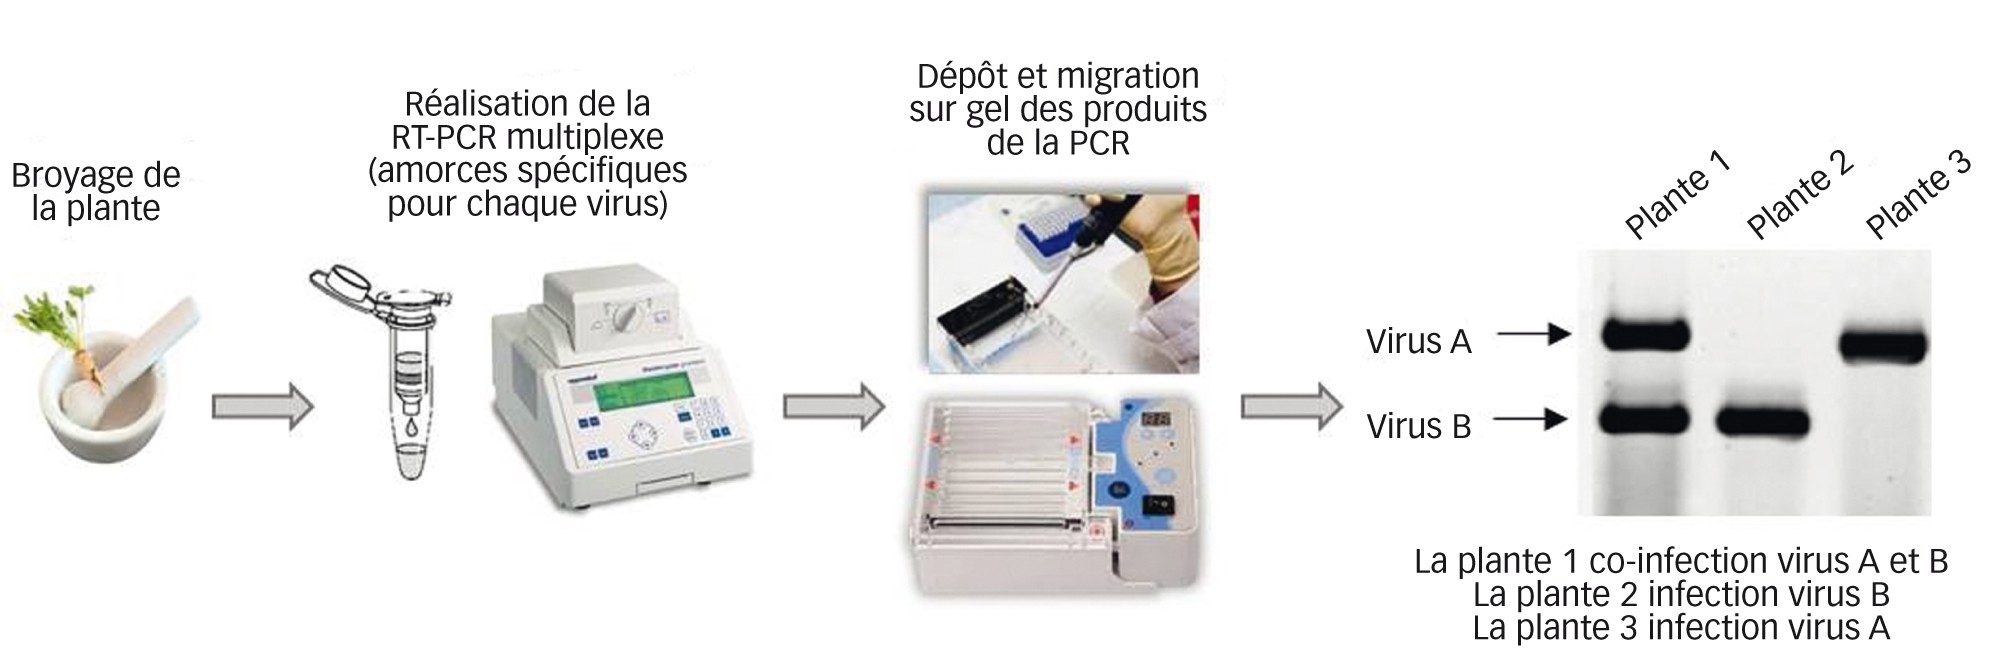 Fig. 3 : Détection des virus responsables des jaunisses par une technique moléculaire, la RT-PCR multiplexe      La technique de RT-PCR (Reverse Transcription-Polymerase Chain Reaction) consiste à amplifier une partie du génome de chaque virus recherché et utilisant de courtes séquences nucléotidiques (amorces) spécifiques de chaque virus. En mélangeant les différentes amorces qui reconnaissent chacun un virus, il est possible au sein d'une réaction unique d'identifier plusieurs virus dans un même échantillon. 